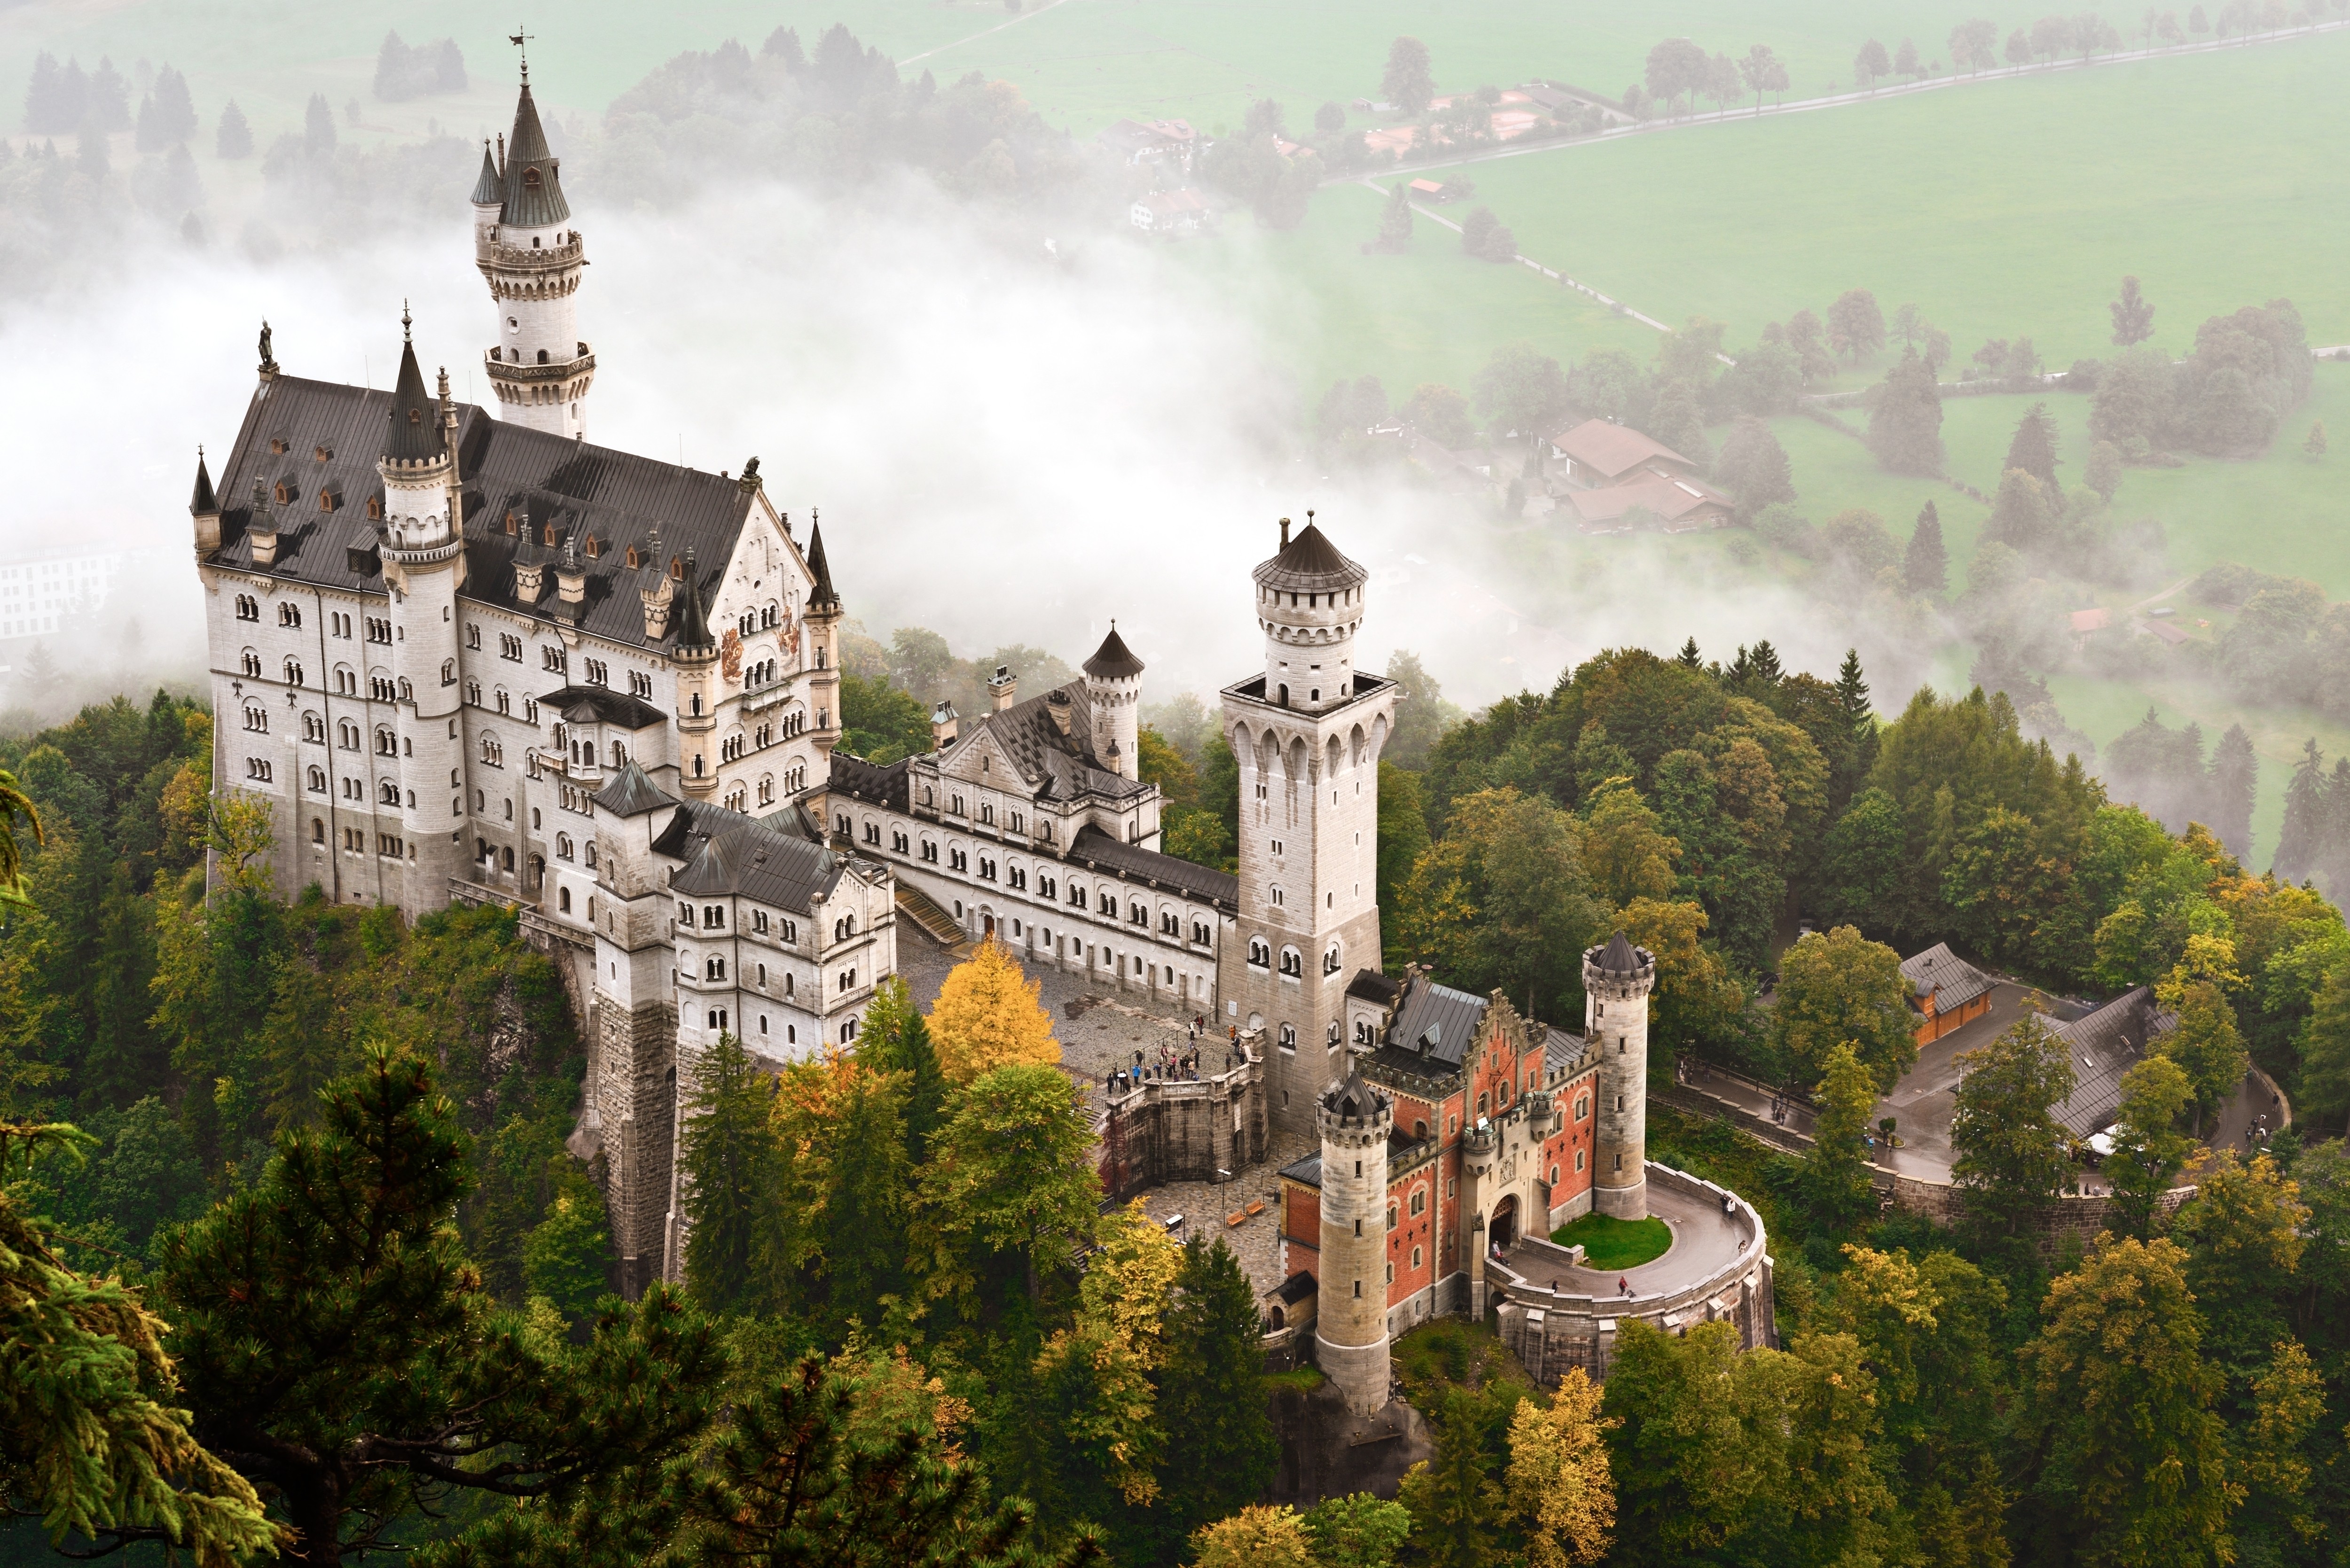 Скачать обои бесплатно Замки, Замок, Германия, Замок Нойшванштайн, Сделано Человеком картинка на рабочий стол ПК